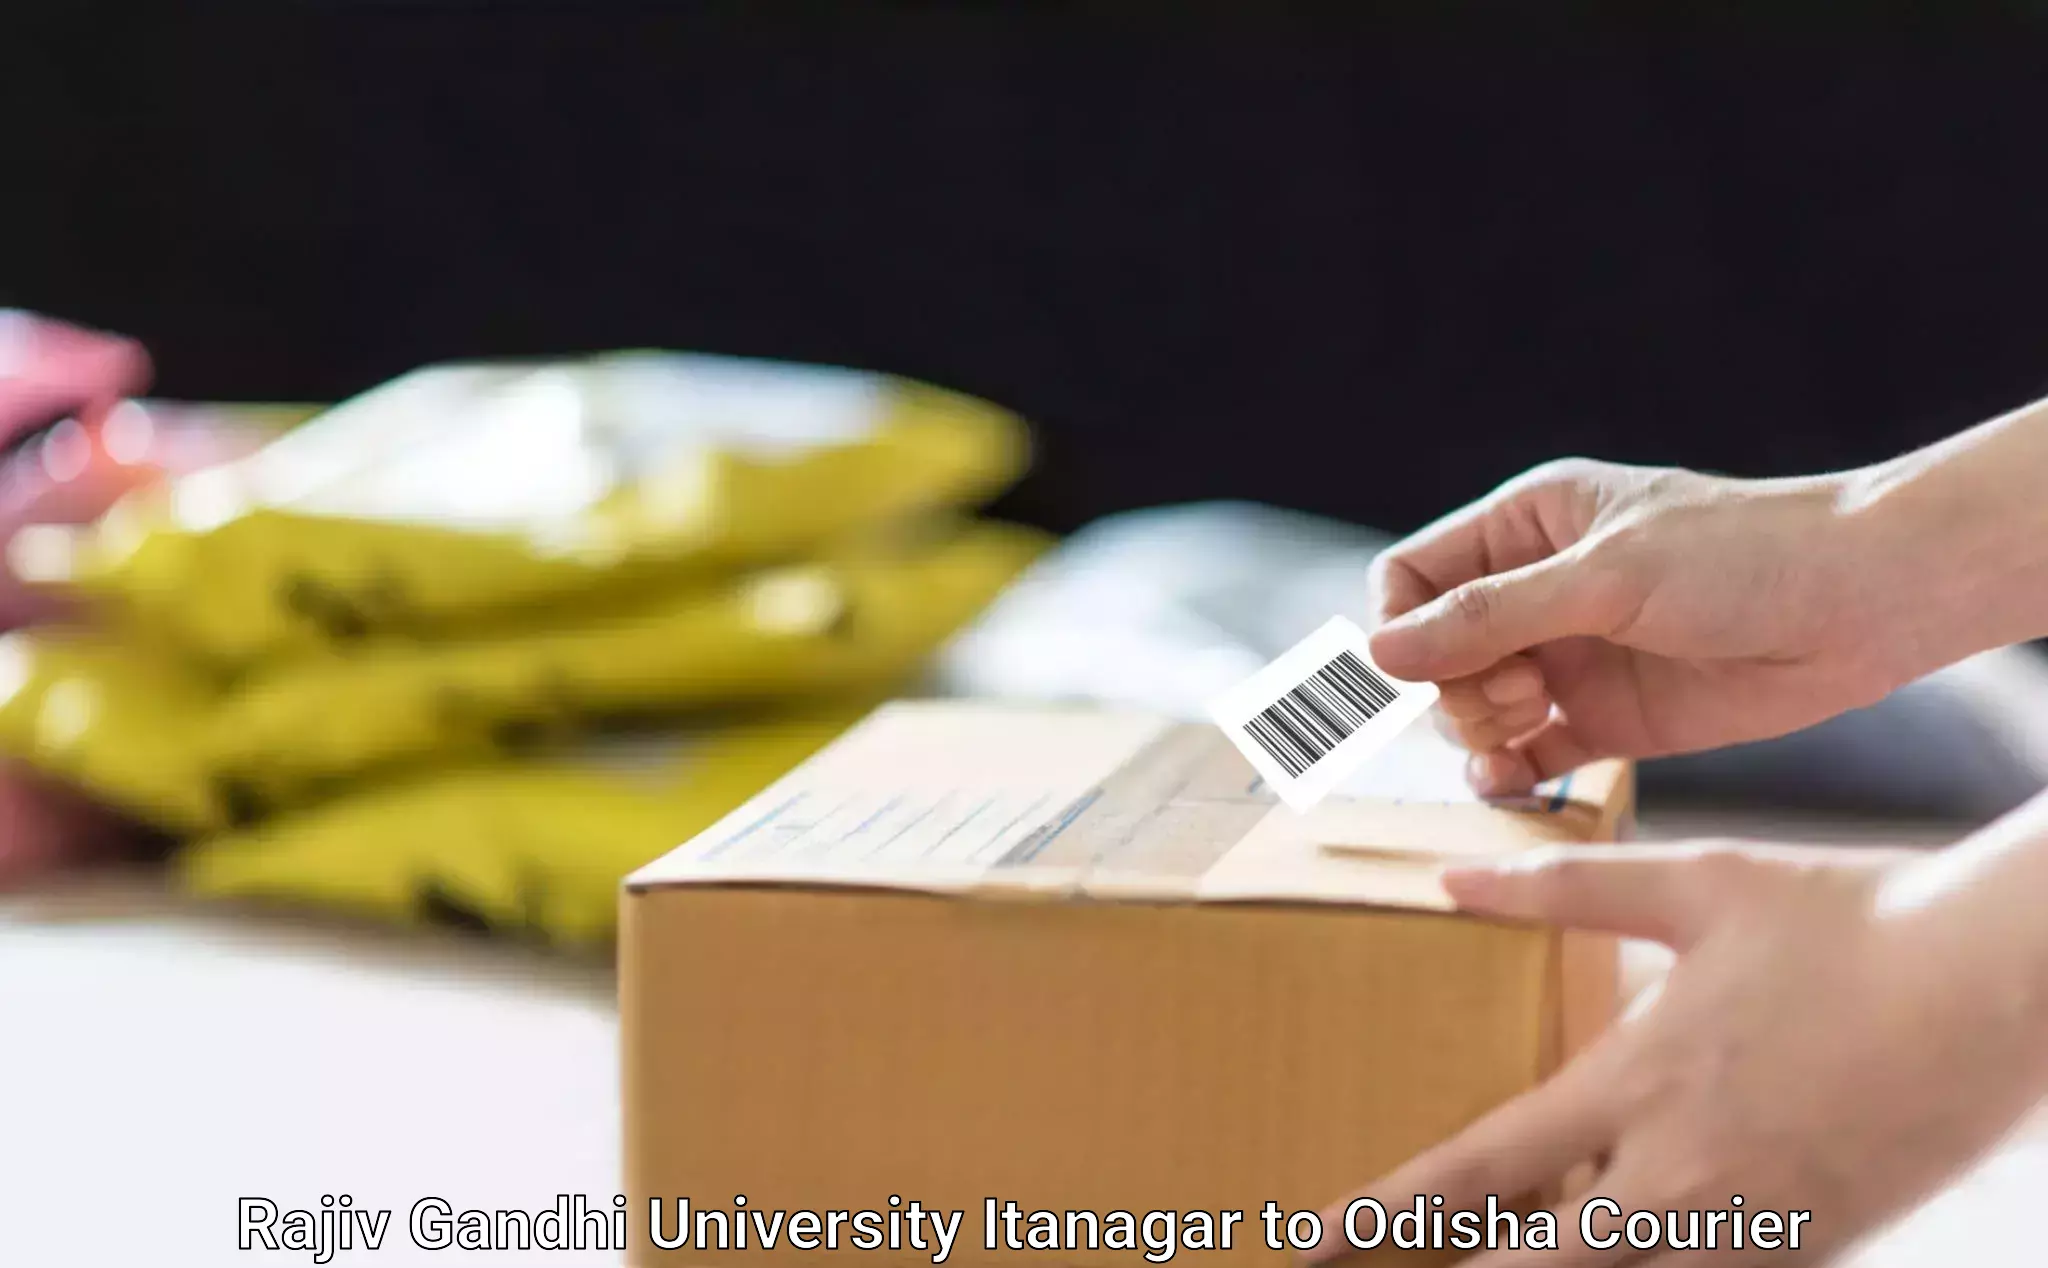 Tech-enabled shipping Rajiv Gandhi University Itanagar to Bhubaneswar